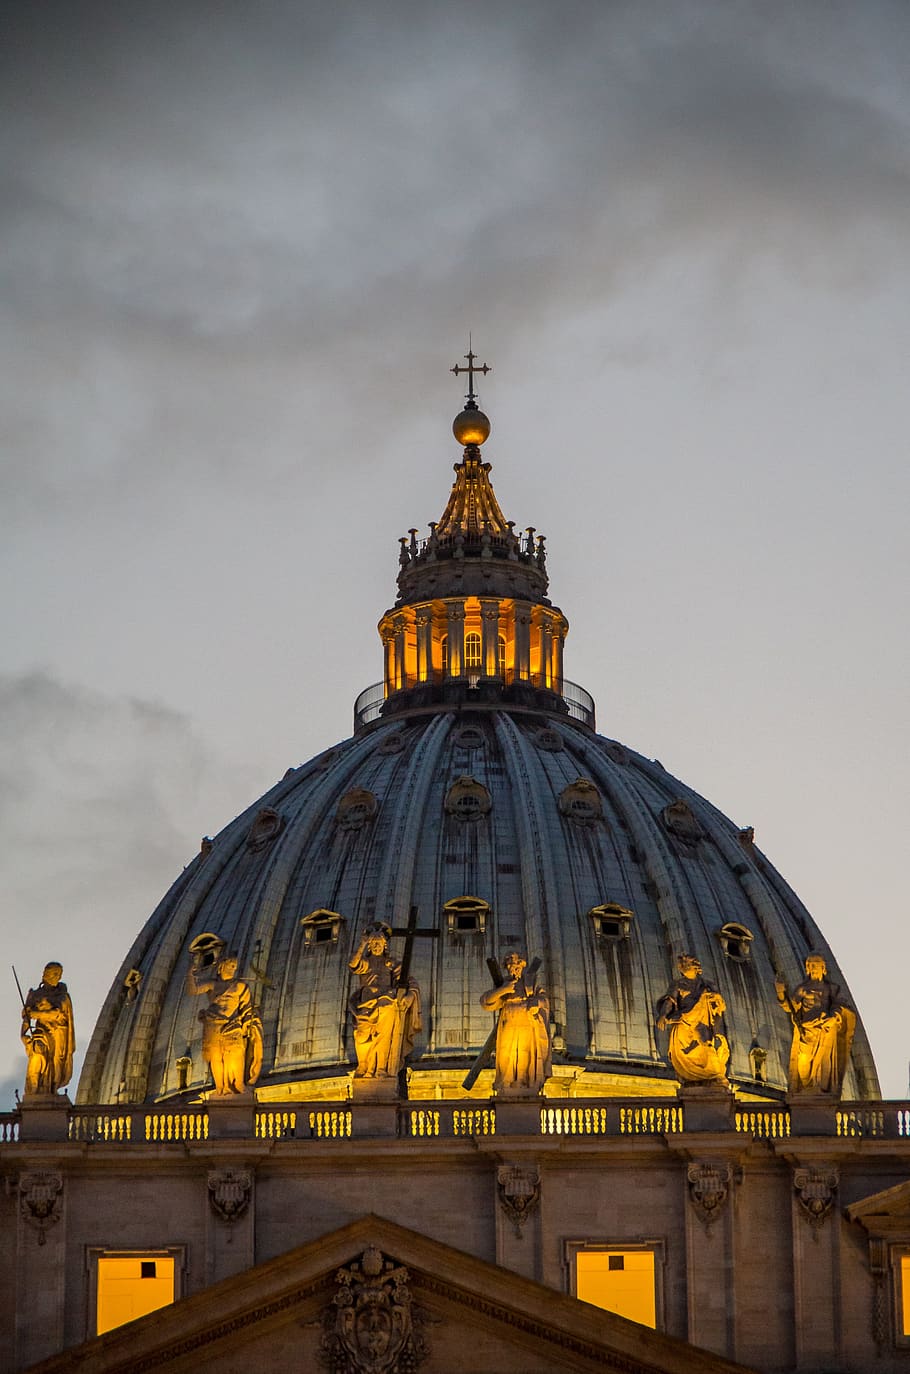 Basílica de San Pedro, Roma, Ciudad del Vaticano, Abendstimmung, arquitectura, iglesia, hito, religión, Vaticano, cúpula